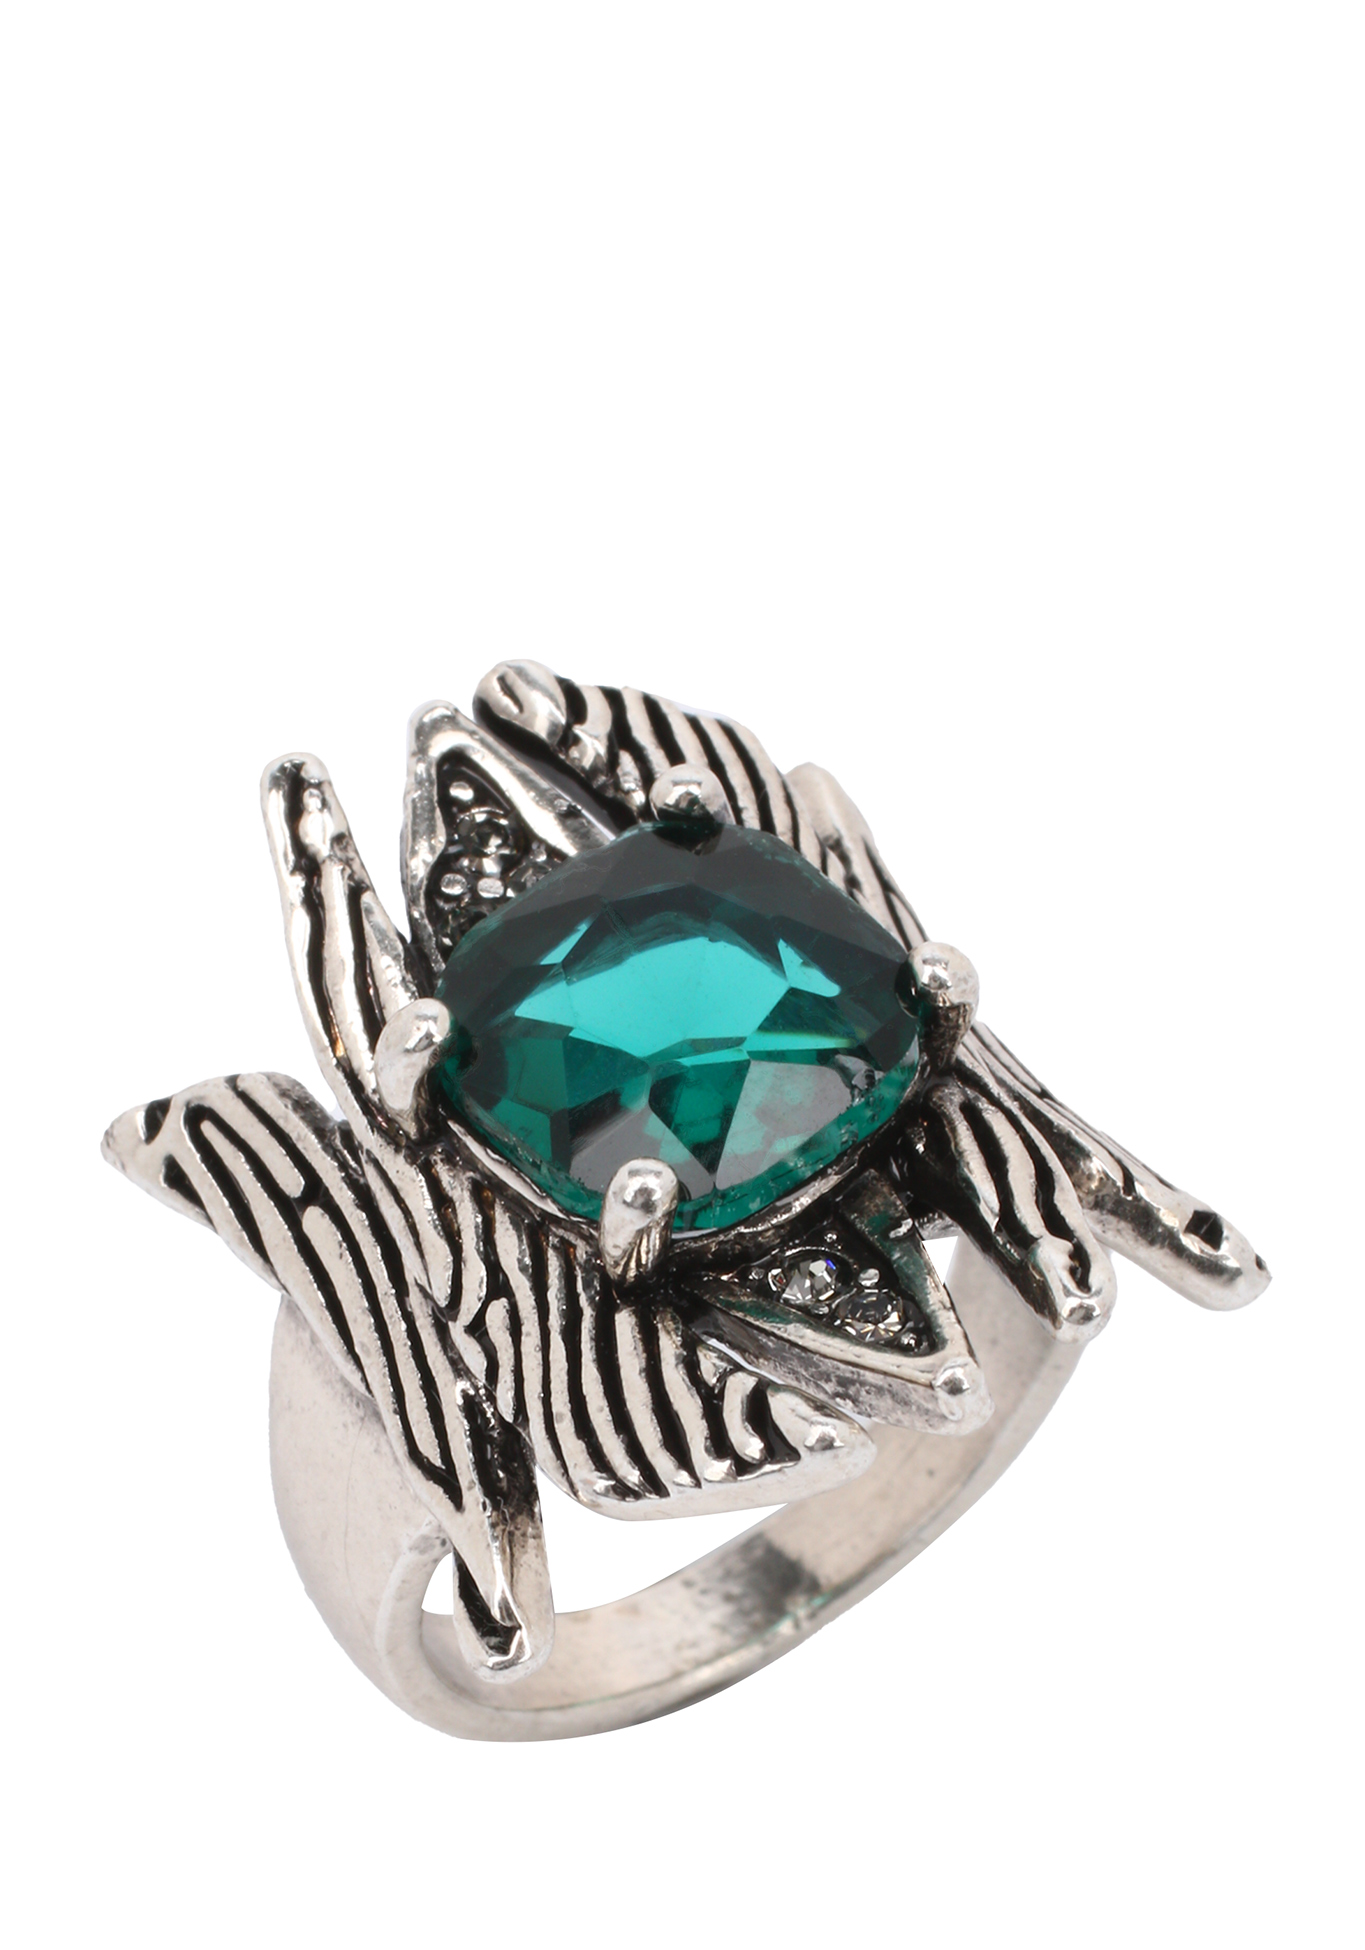 Комплект "Ларец желаний" Доминика Росси, размер 17, цвет зеленый перстень - фото 3